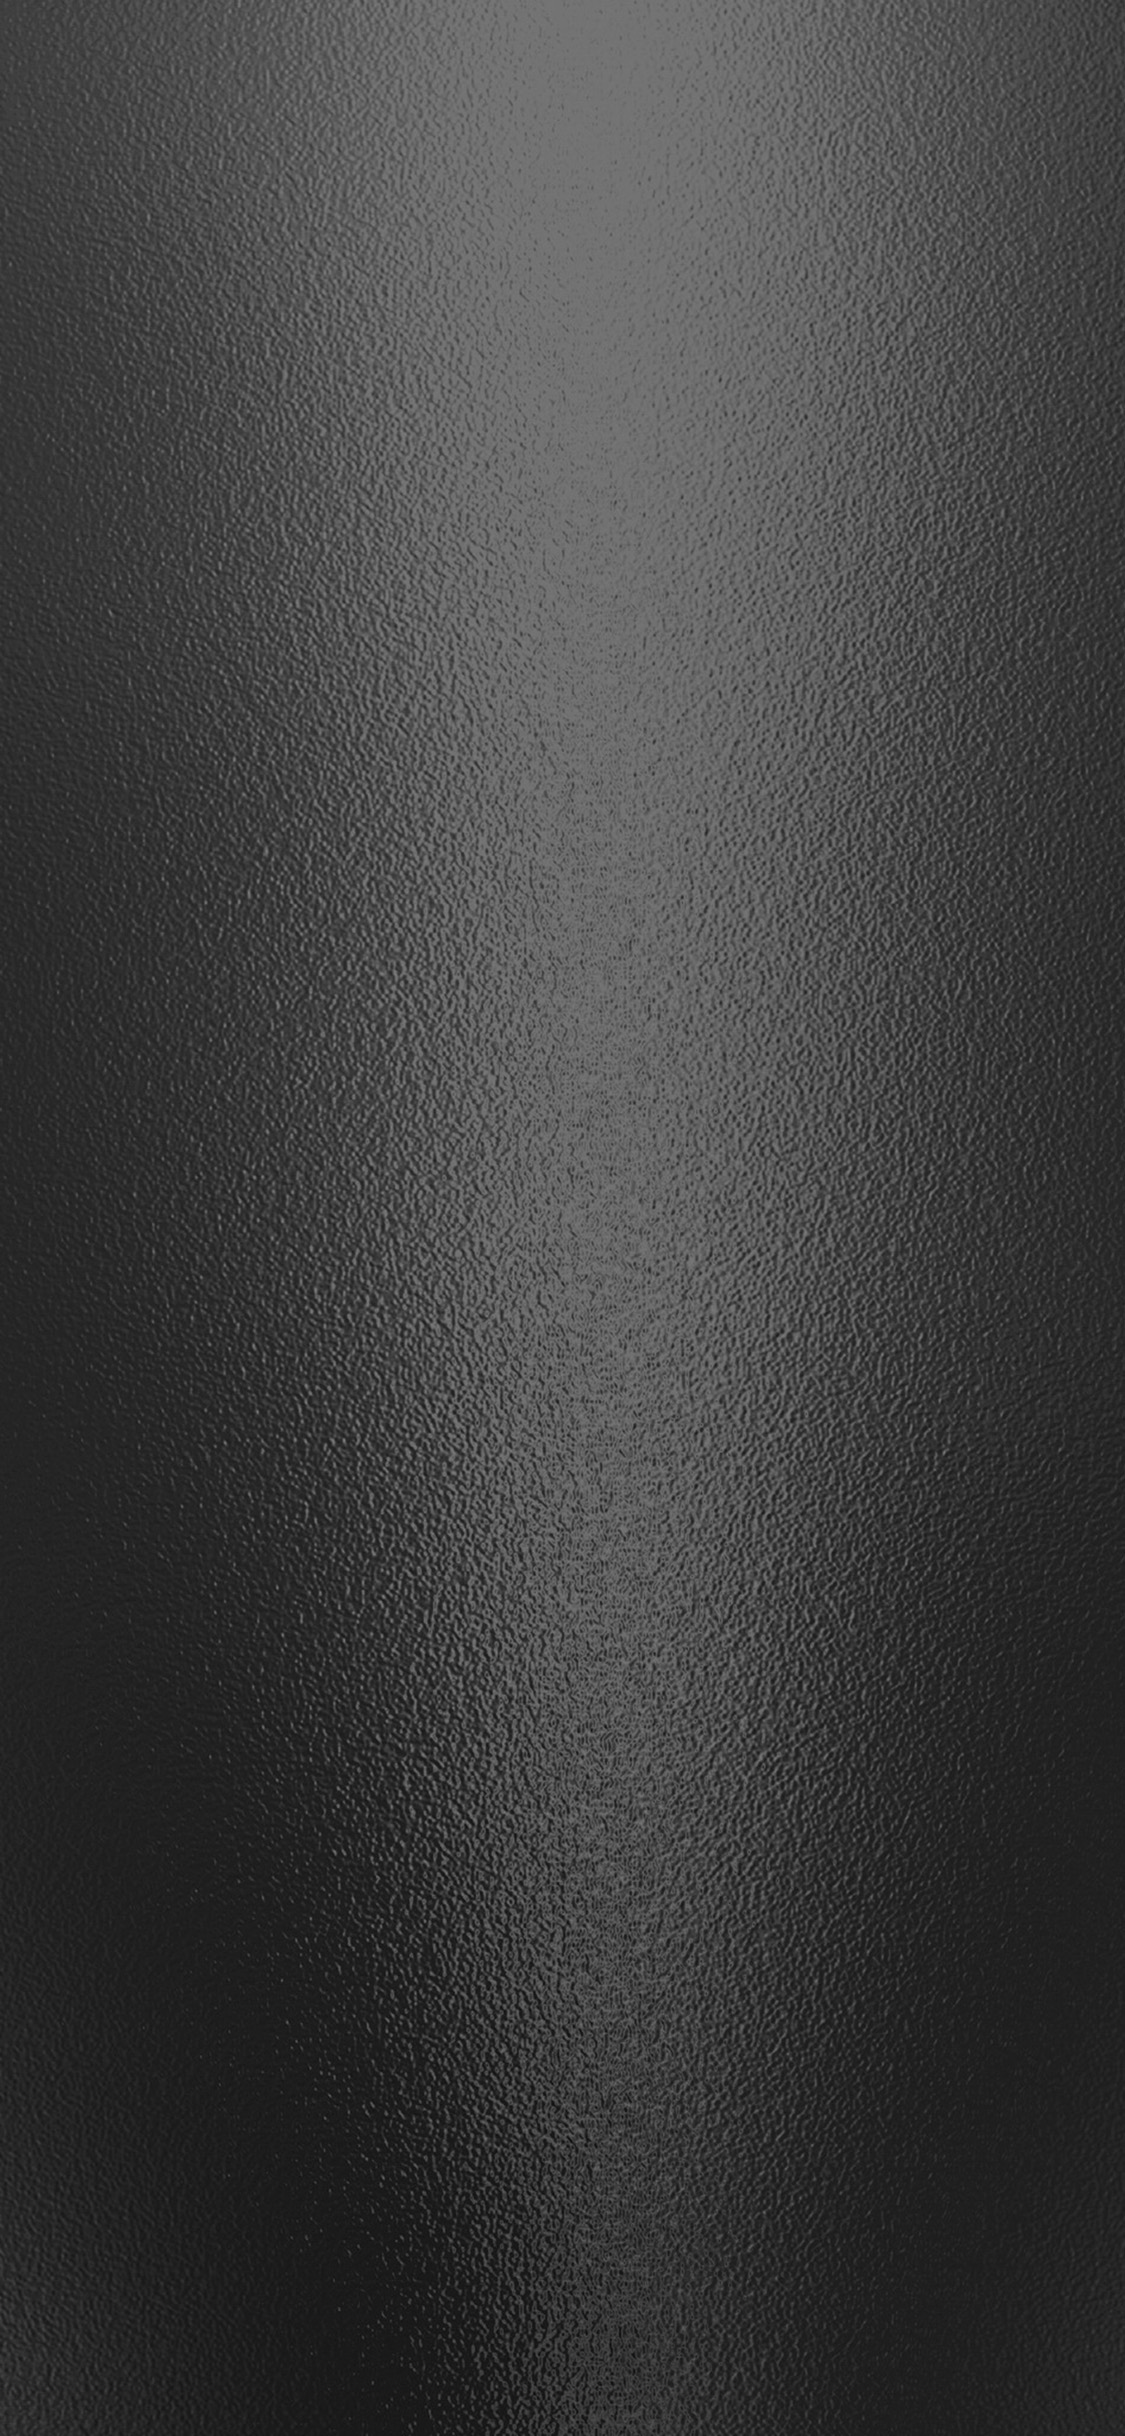 texture metal dark pattern background